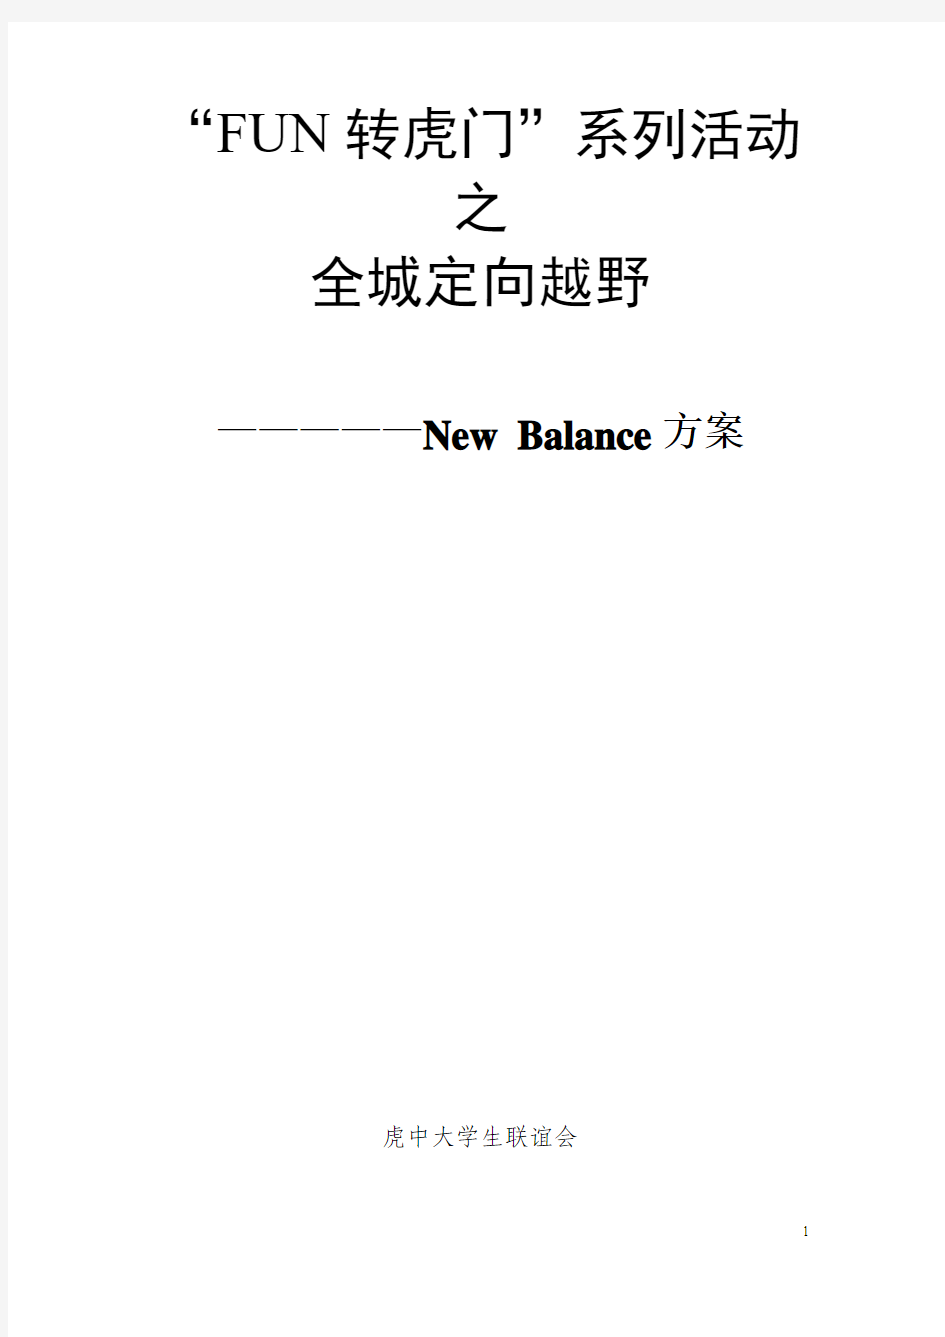 定向越野策划书New Balance方案